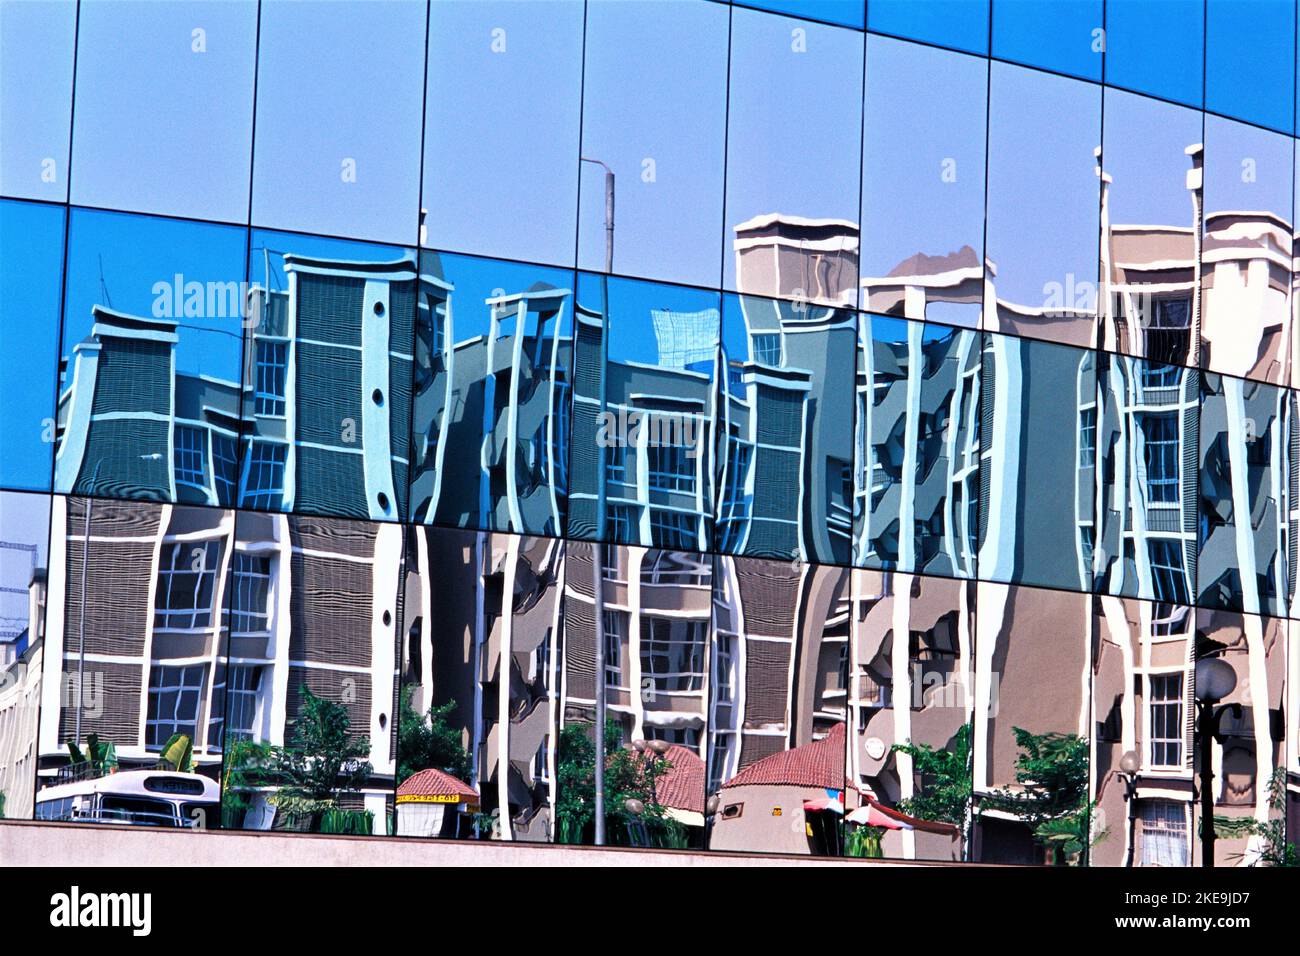 Spiegelung von Gebäuden in Glas Stockfoto